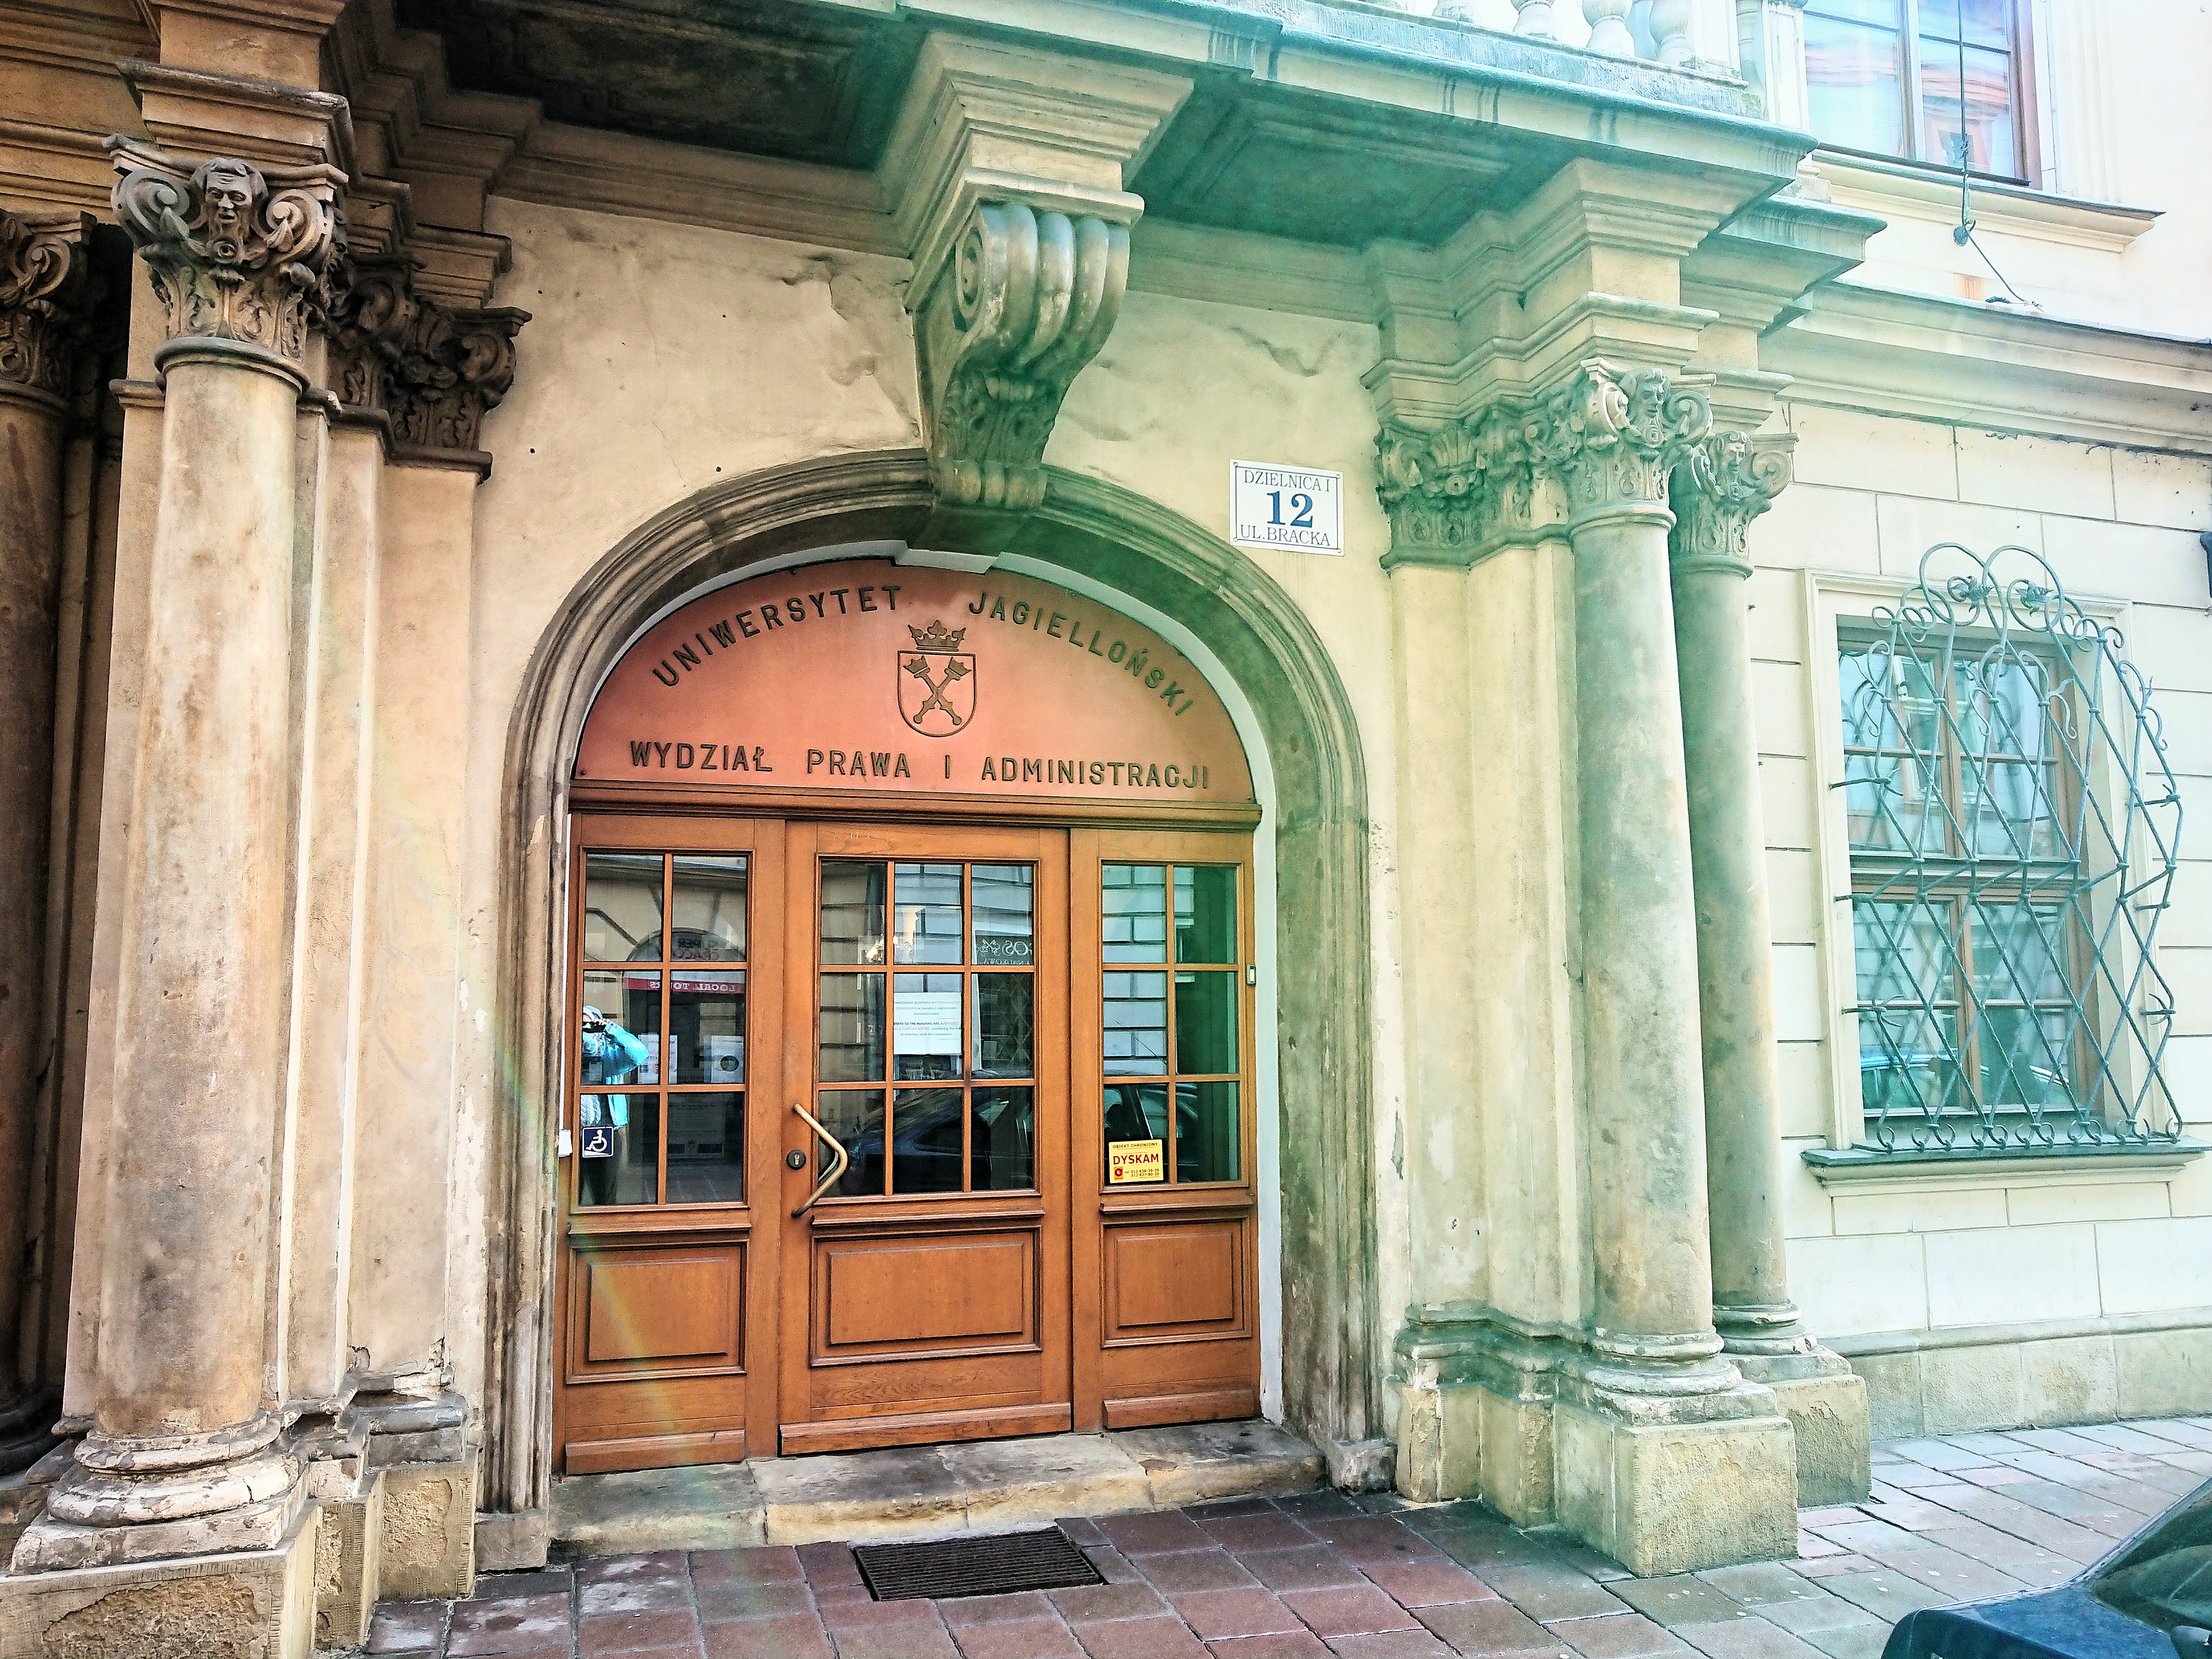 Wejście do Pałacu Larischa, źródło: archiwum autorki